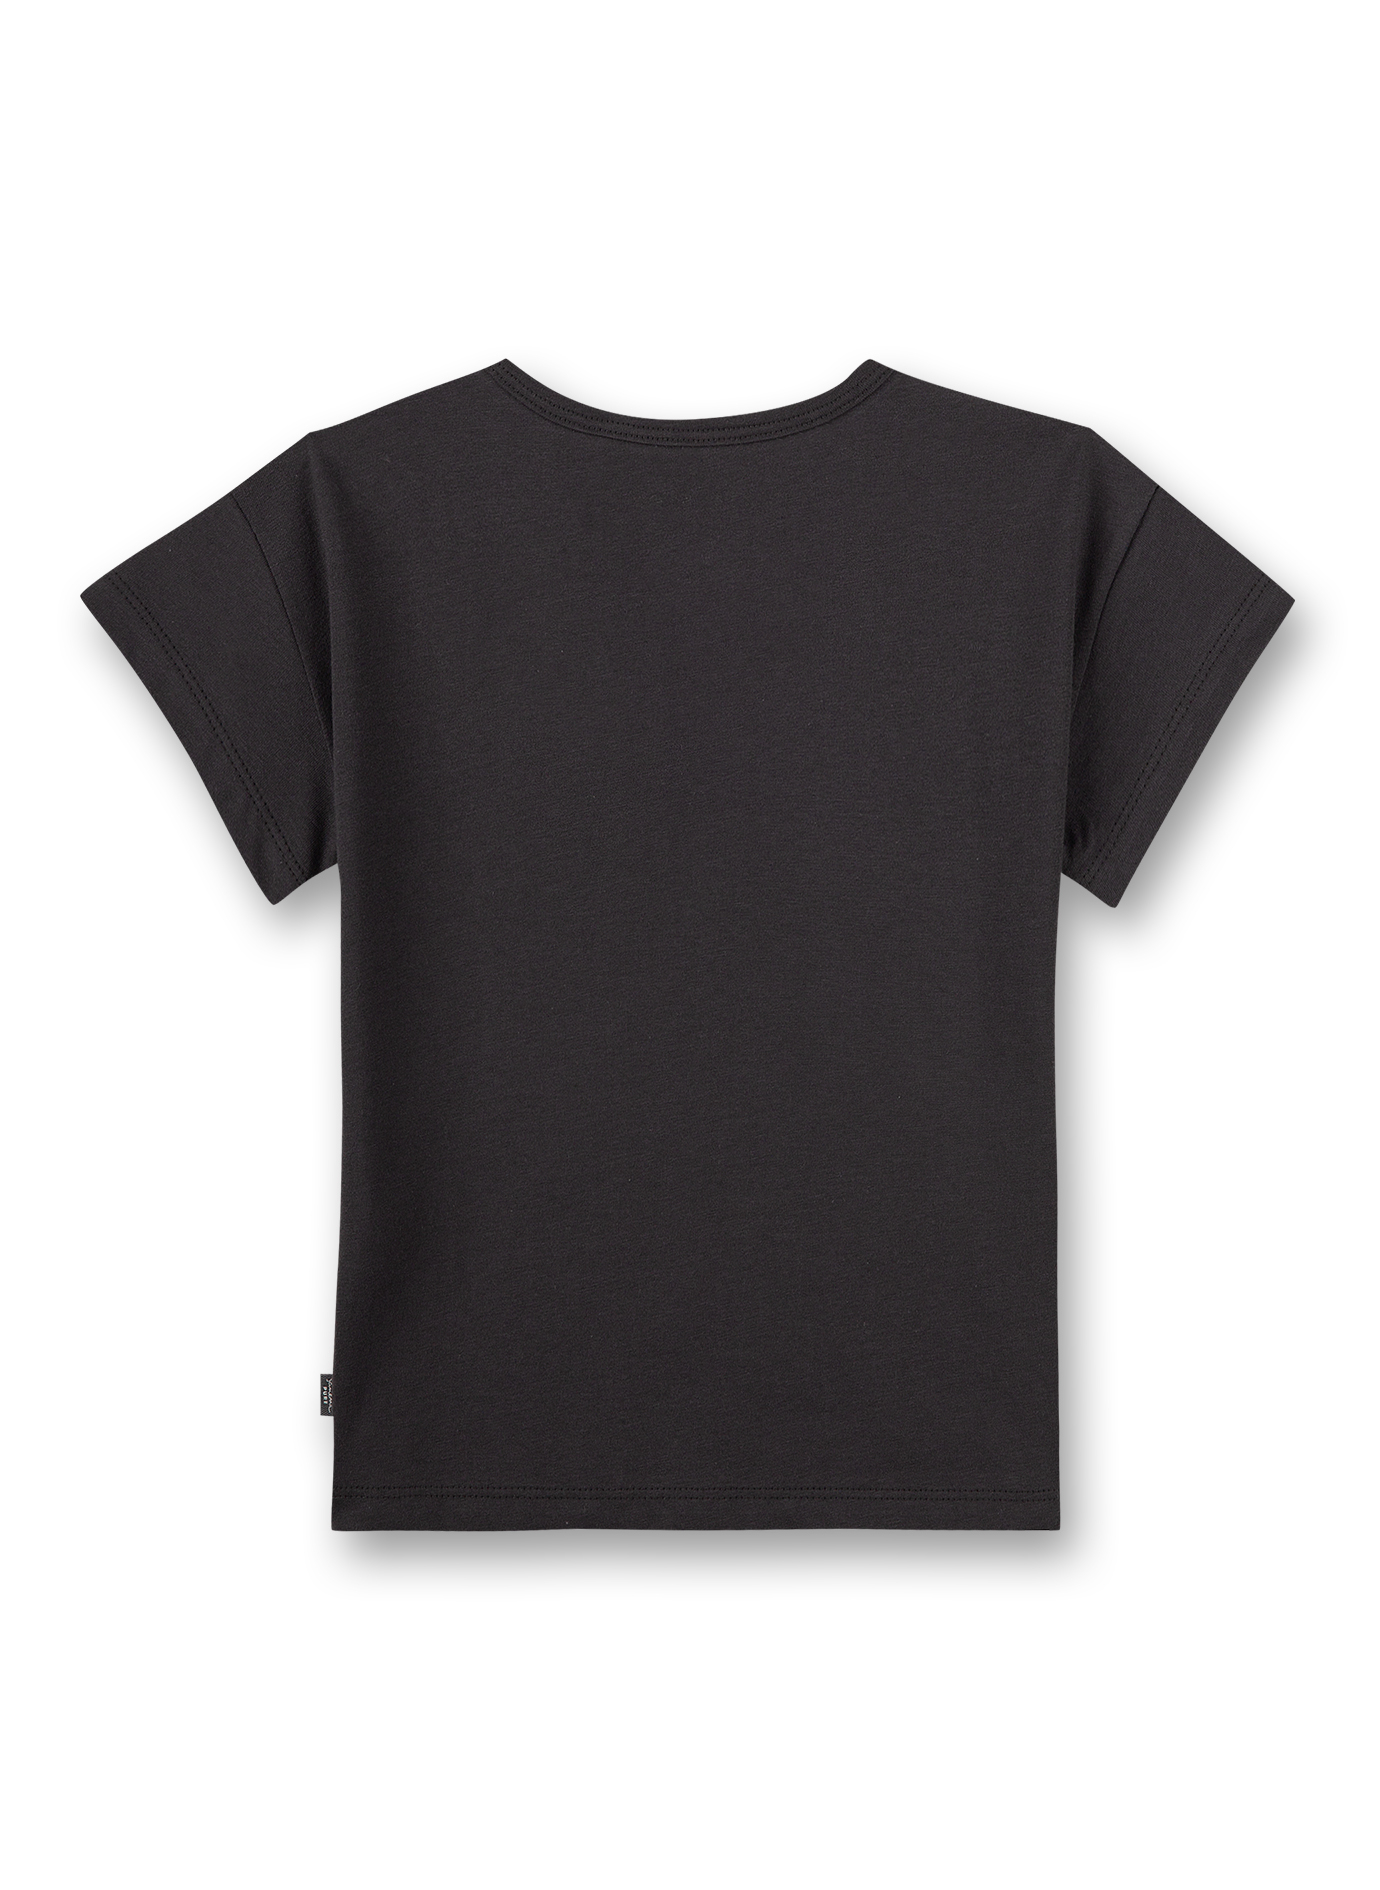 Unisex T-Shirt Anthrazit